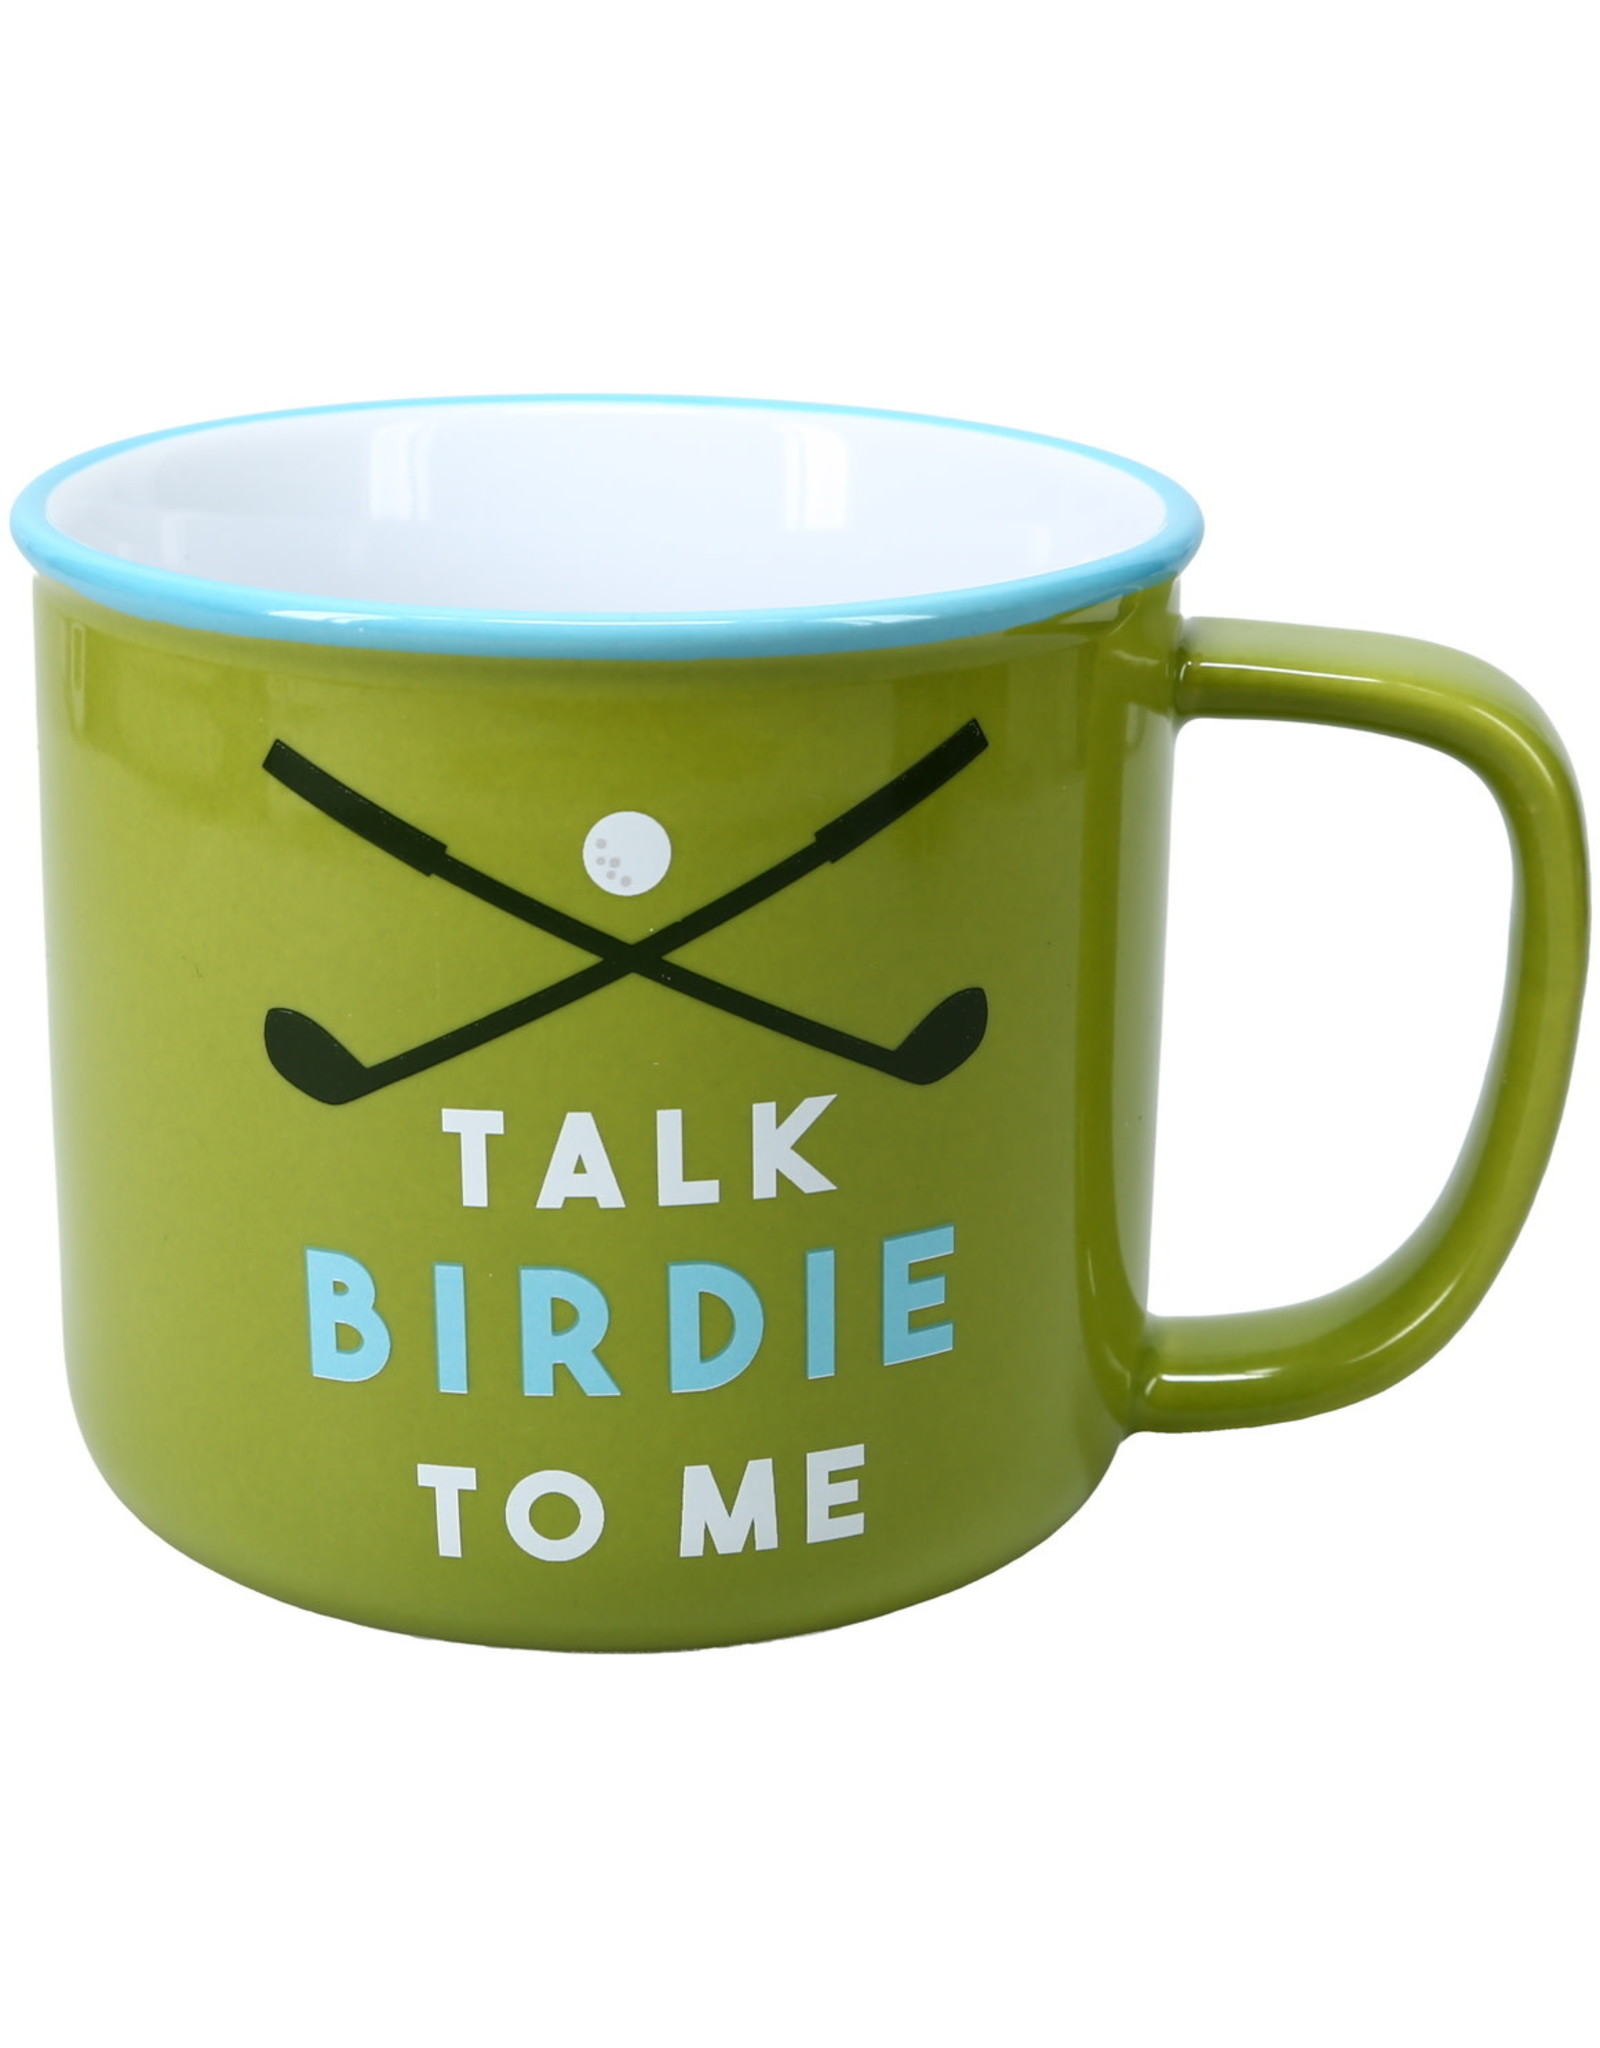 PGC "Talk Birdie To Me" Golf Mug